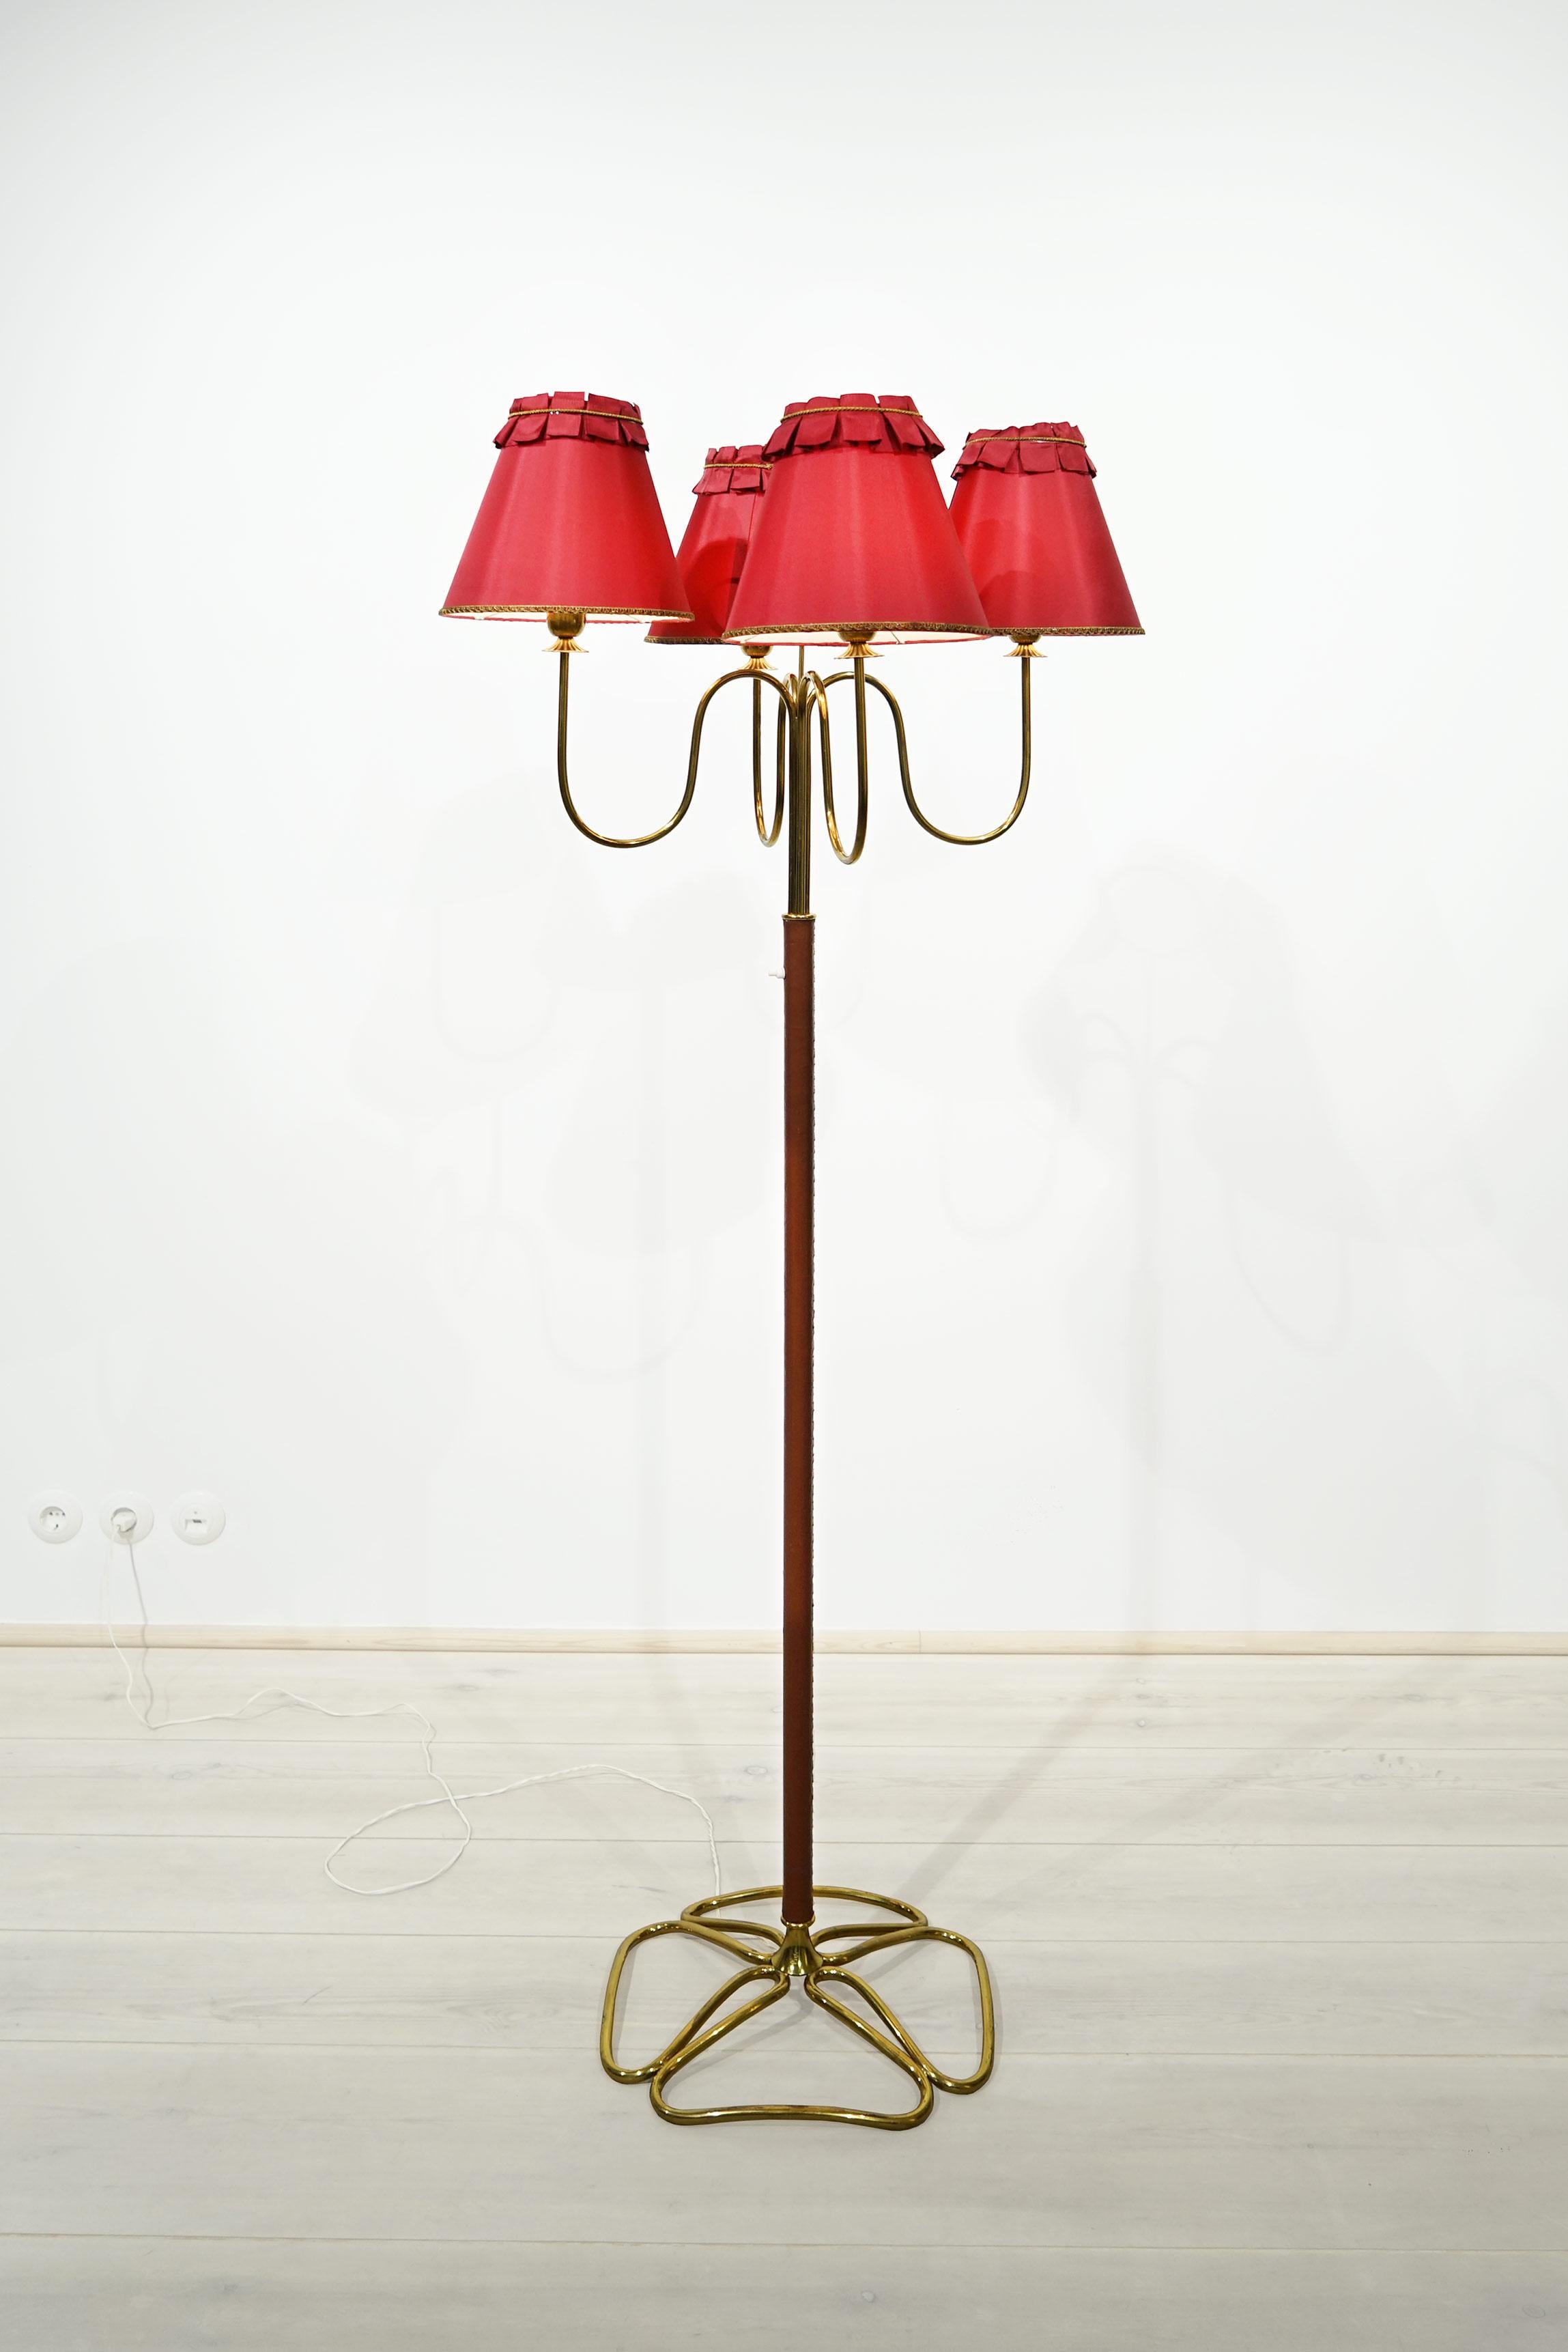 Stehleuchte Modell Nr. 1032 von Gino Sarfatti 1948, Arteluce, Italien.

Gino Sarfatti (1912 in Venedig; † 1984 in Gravedona) war ein italienischer Industriedesigner. Er gilt als einer der bedeutendsten Designer von Leuchten und Lampen im 20.